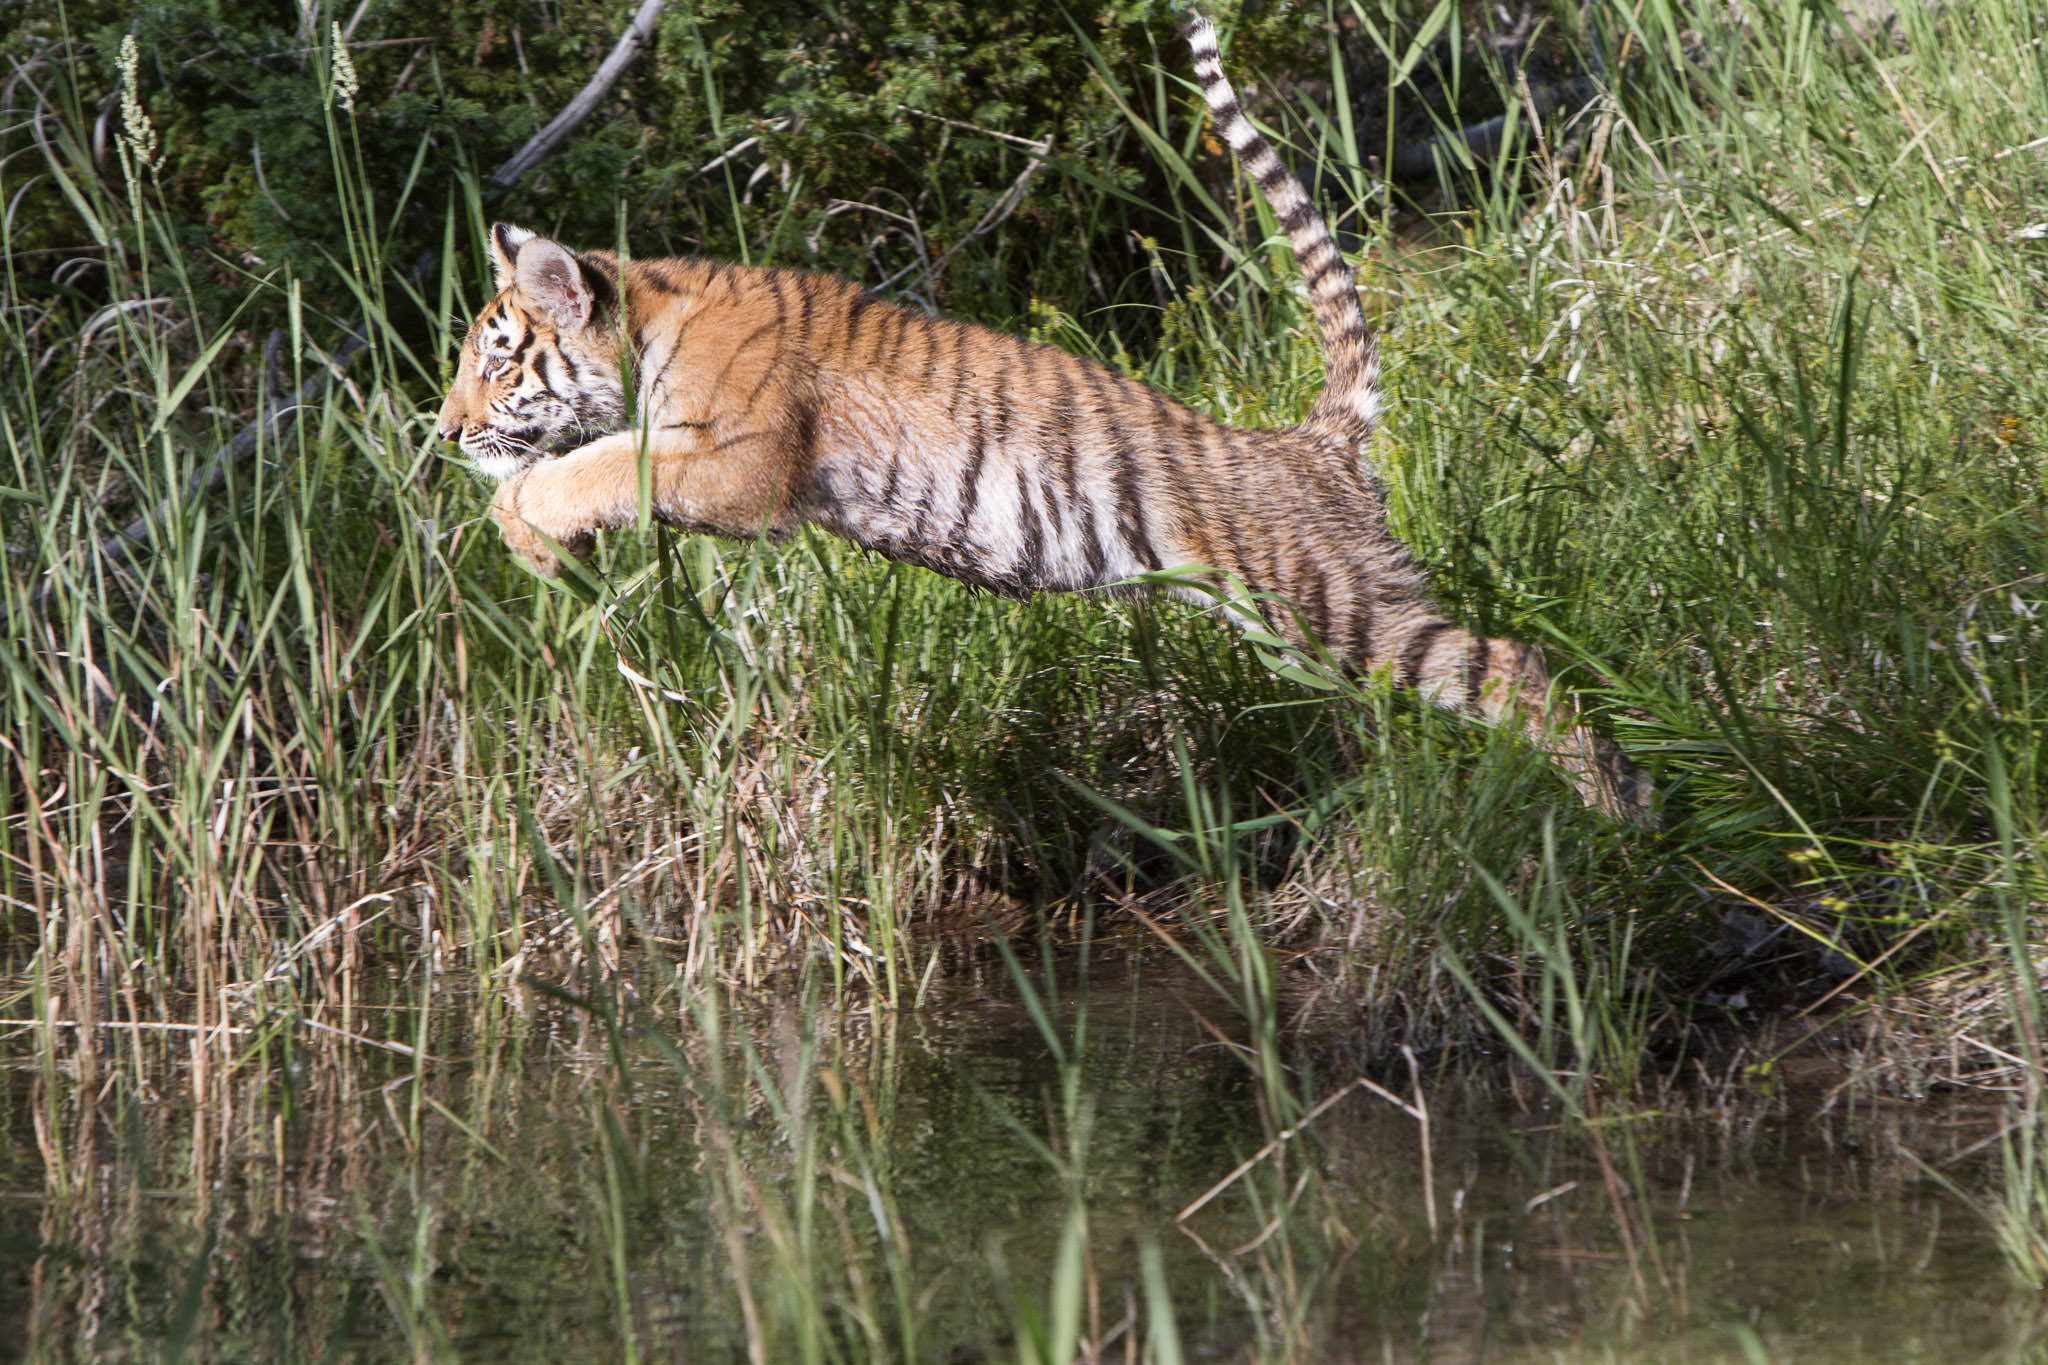  Tiger cub #20130707_0444-2 